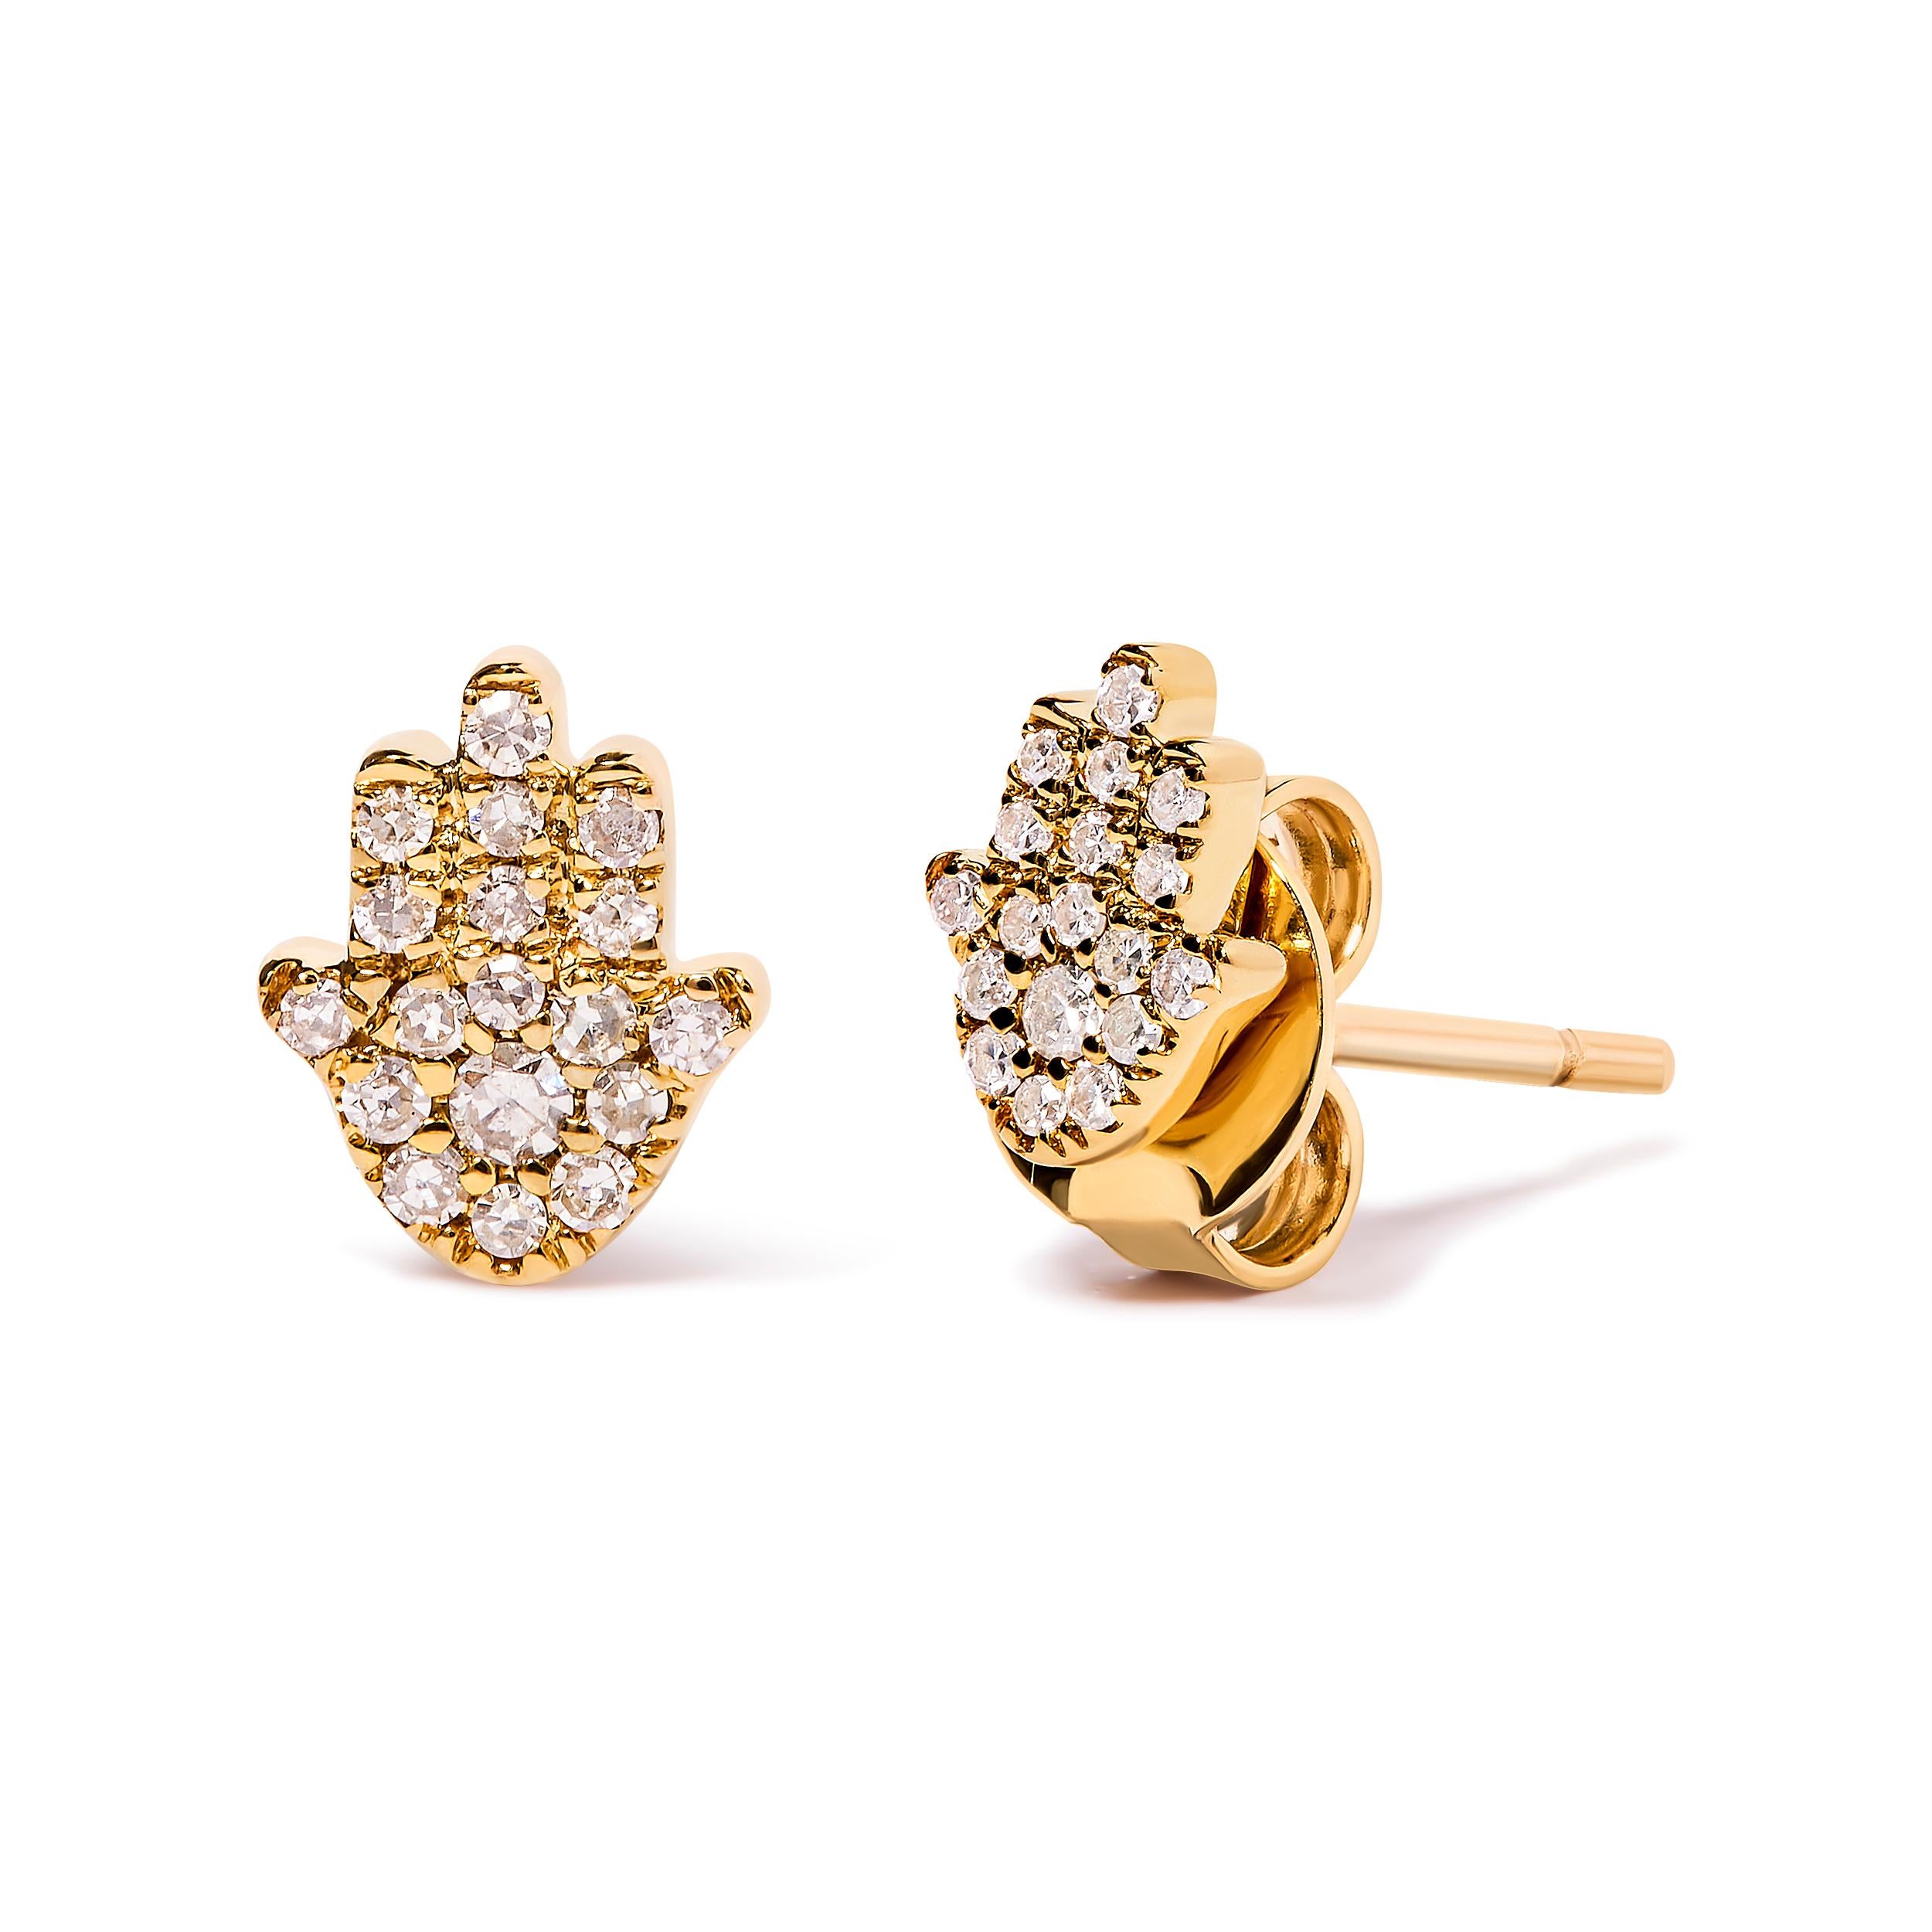 Symbole captivant de protection et de beauté, ces boucles d'oreilles Hamsa en or jaune 10K serties de diamants sont un must absolu pour toute femme en quête d'élégance et de grâce. Réalisée avec une attention méticuleuse aux détails, chaque boucle